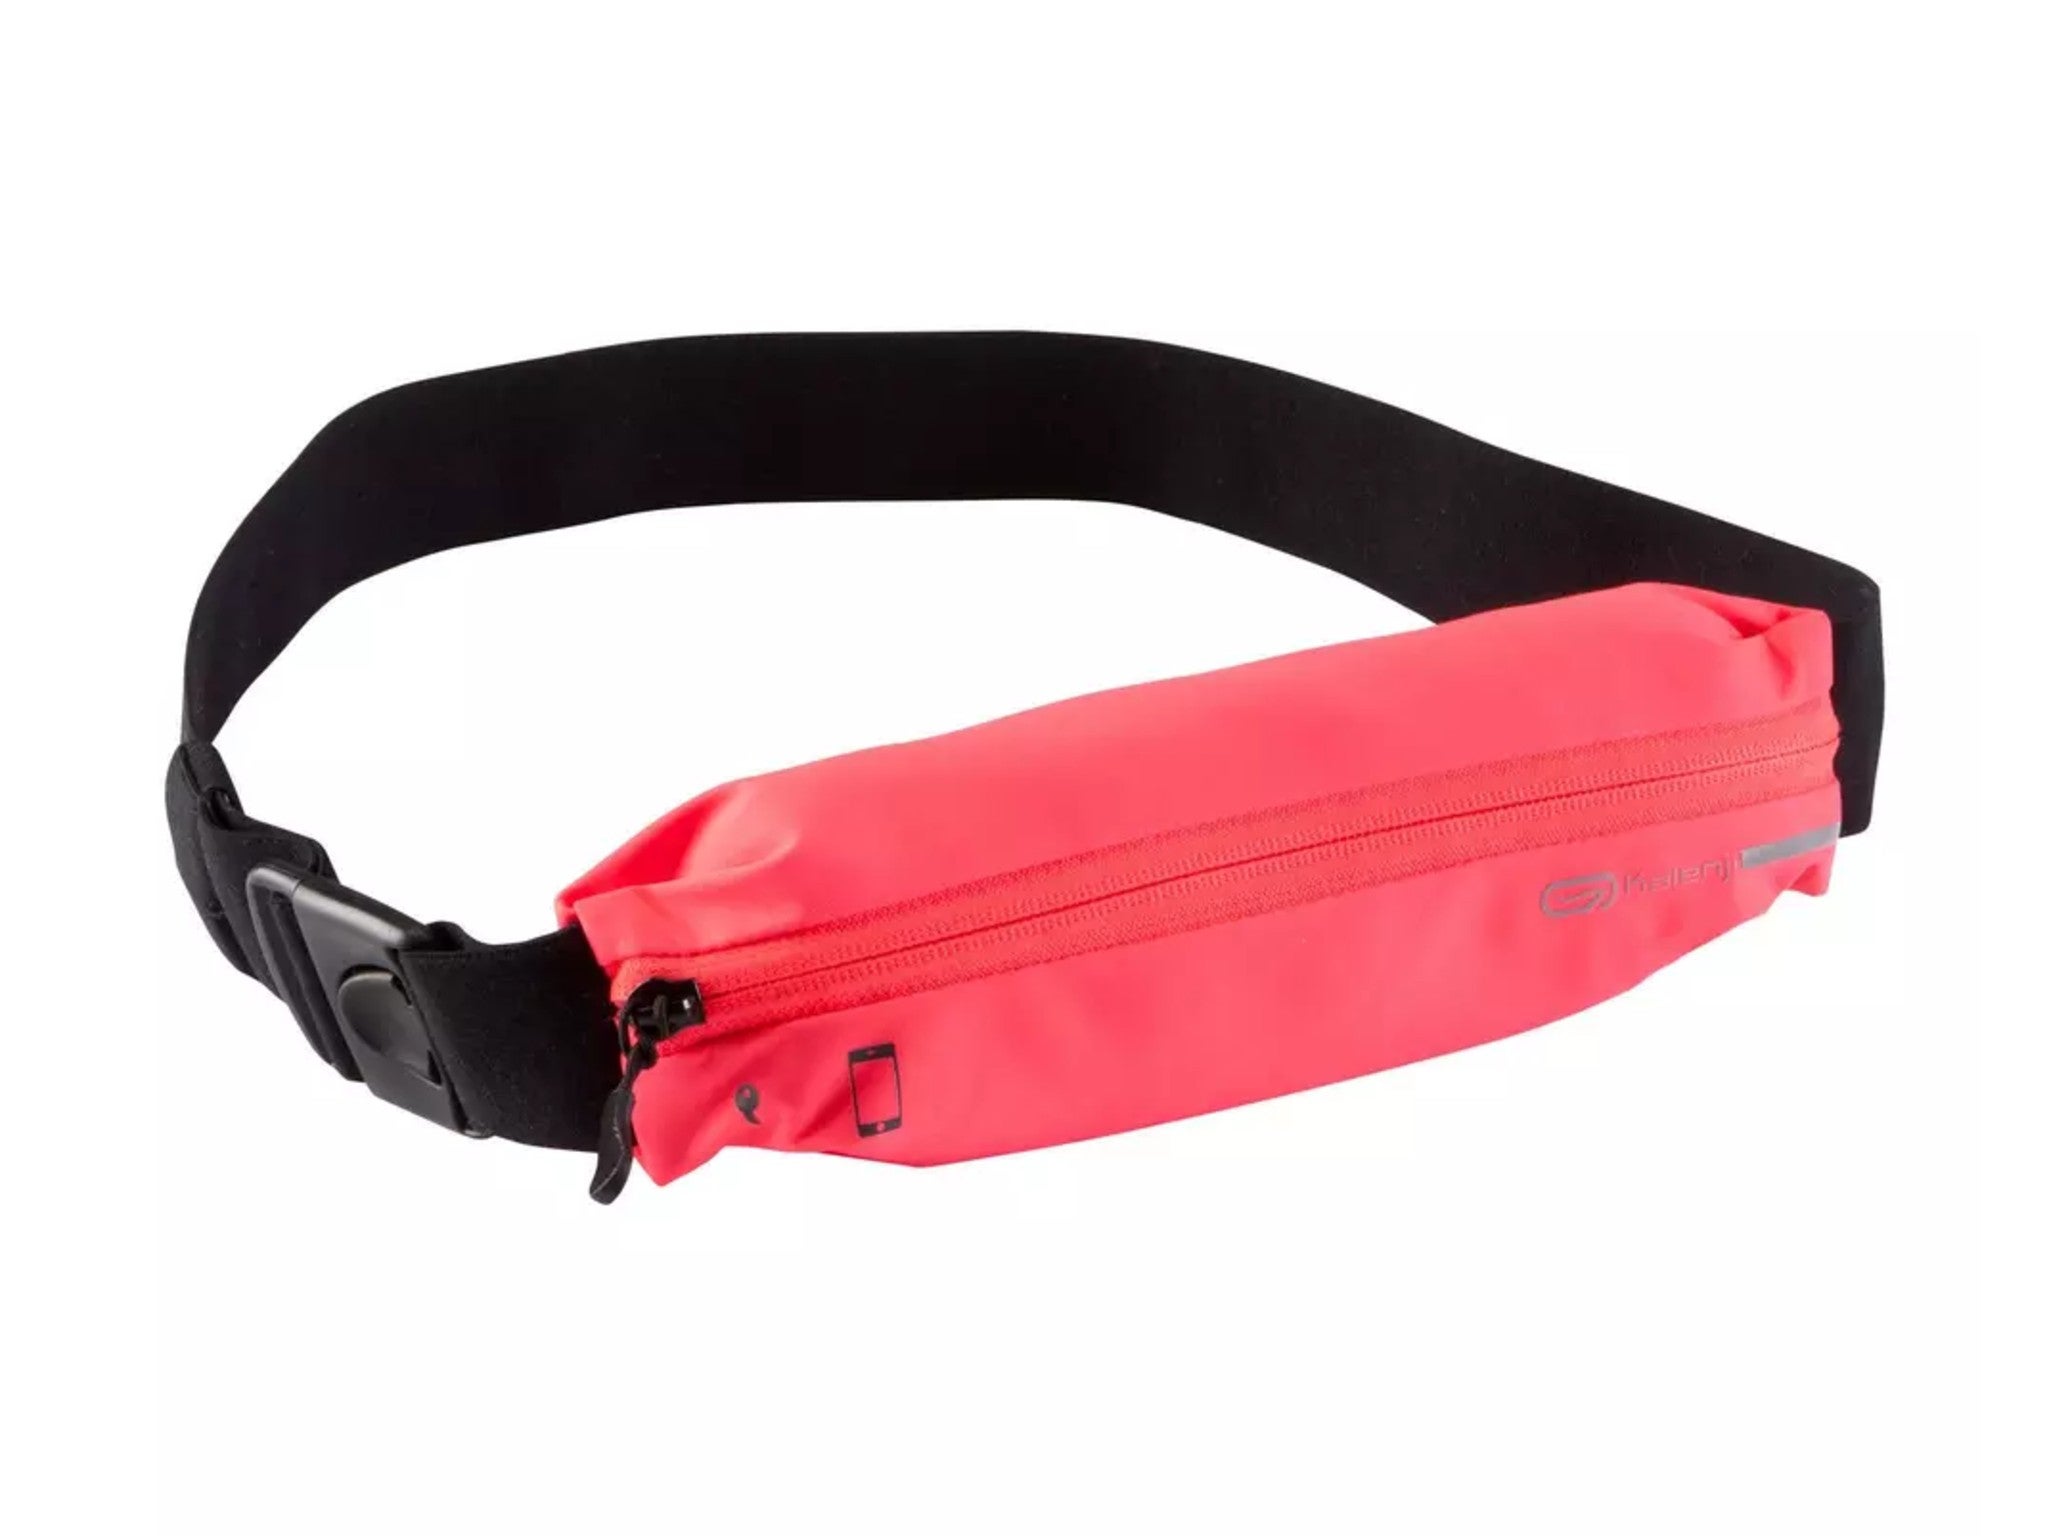 SPIBelt Waist Pack Black Pouch Pink Zip Running Cycling Small Personal Item Belt 